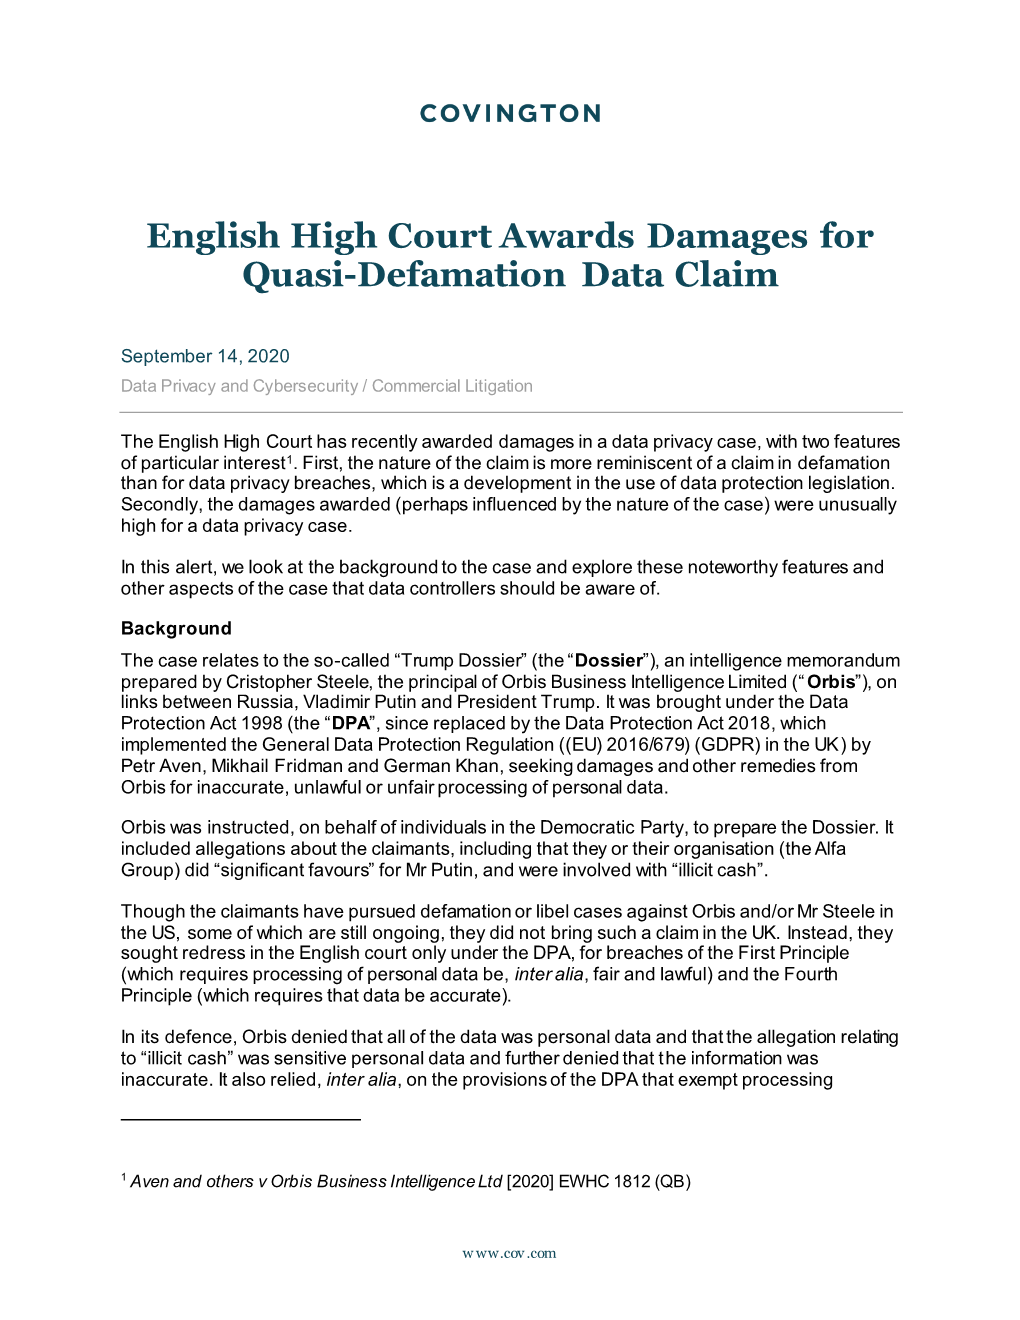 English High Court Awards Damages for Quasi-Defamation Data Claim